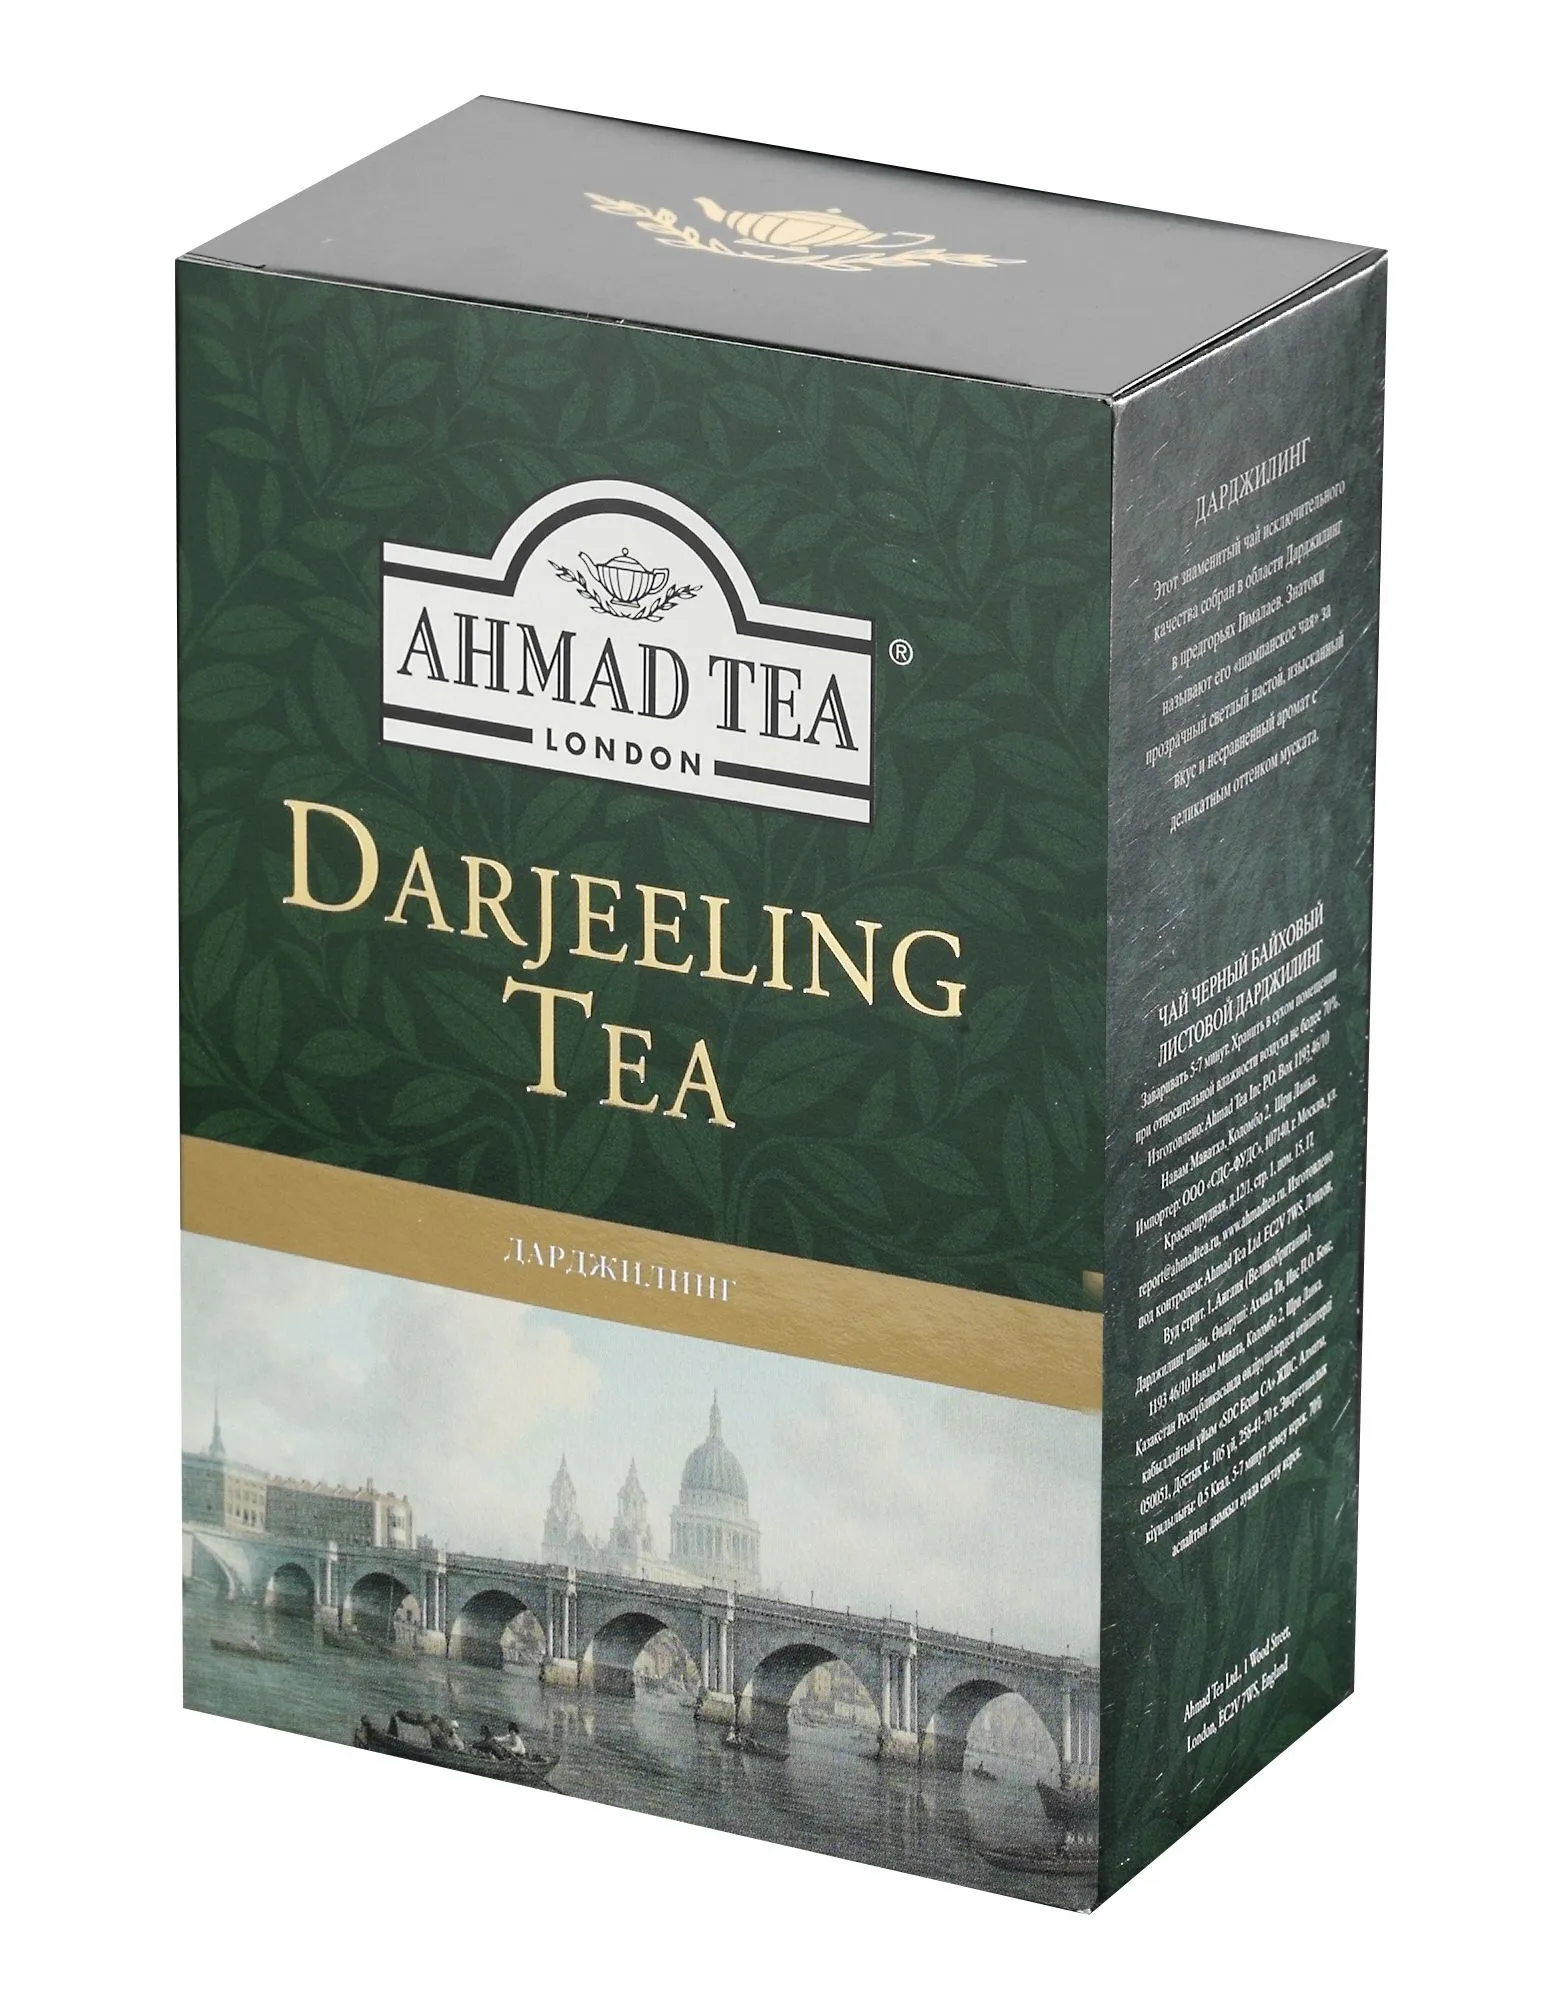 Ahmad Tea Darjeeling Tea sypaný čaj 100 g